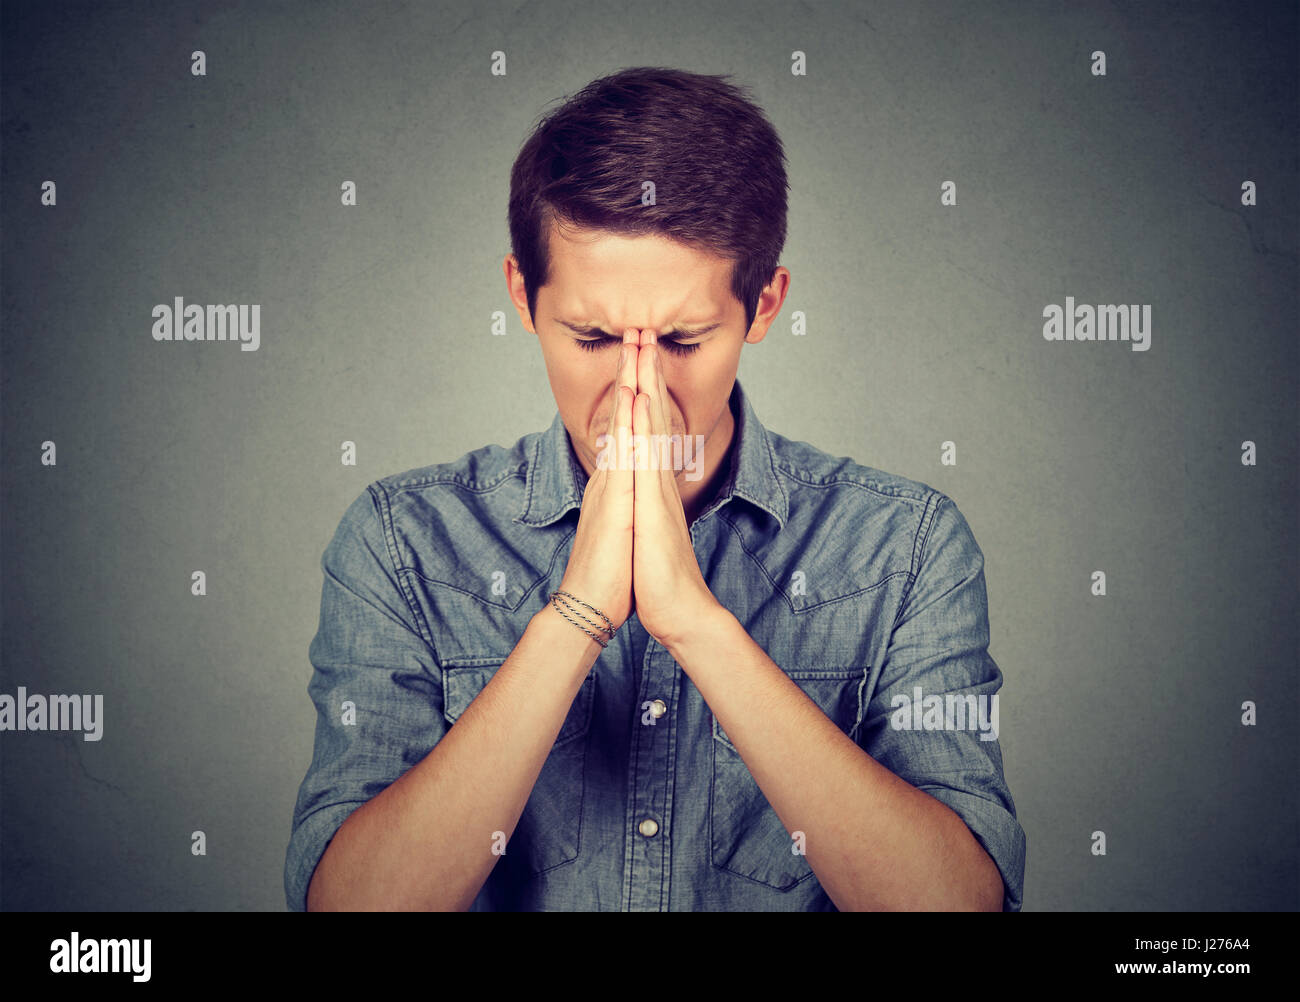 Porträt des jungen verzweifelten Menschen beten Stockfoto